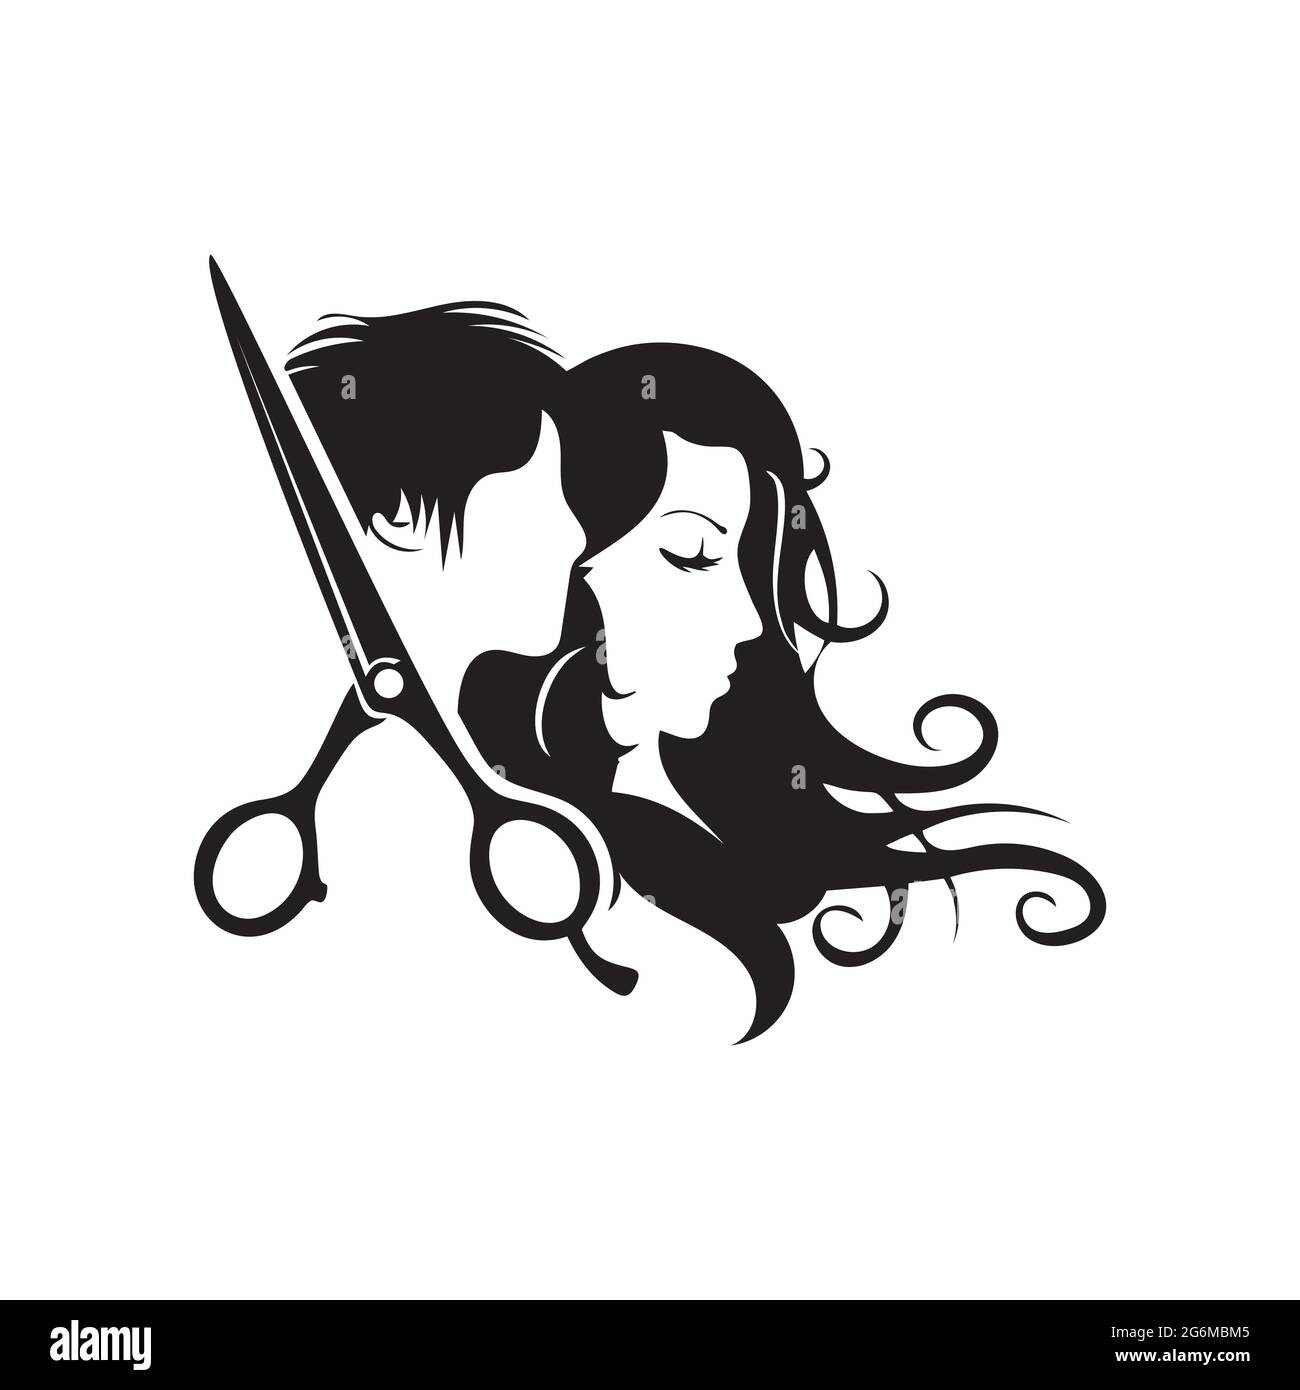 Logo parrucchiere, logo salone di bellezza con silhouette uomo e donna,  illustrazione vettoriale Immagine e Vettoriale - Alamy